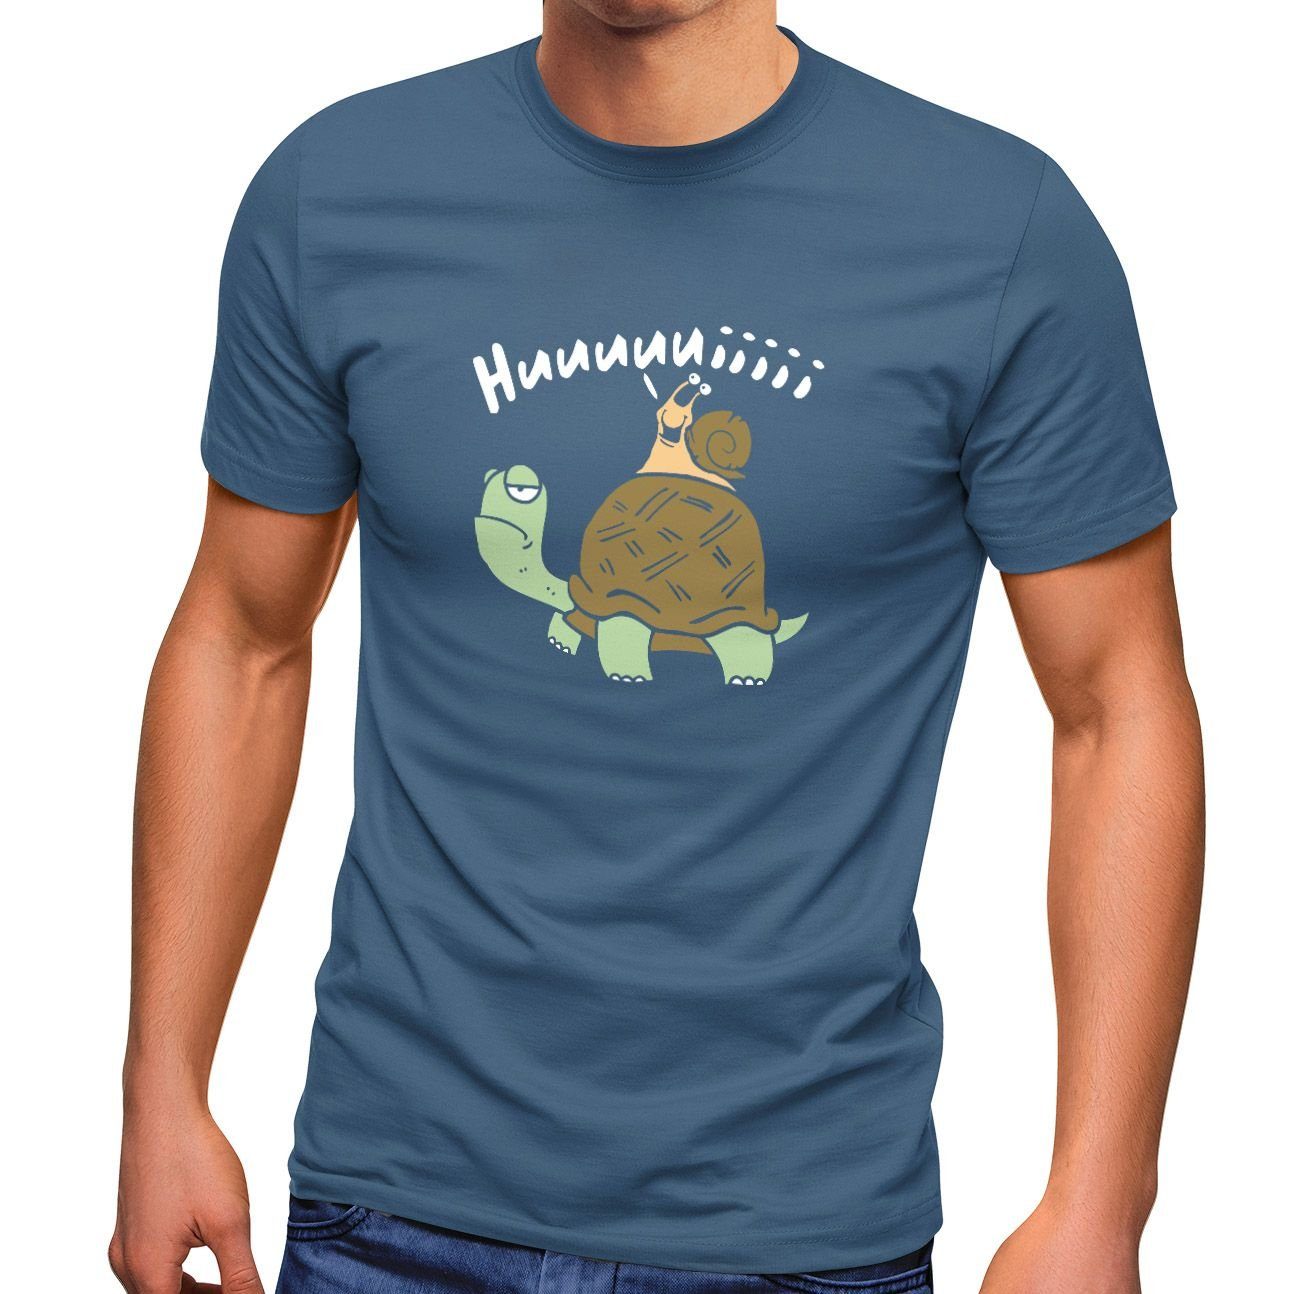 MoonWorks Print-Shirt Herren T-Shirt Schildkröte Schnecke Huuuuiiii Lustig Witzig Scherz Comic Fun-Shirt Spruch lustig Moonworks® mit Print blau